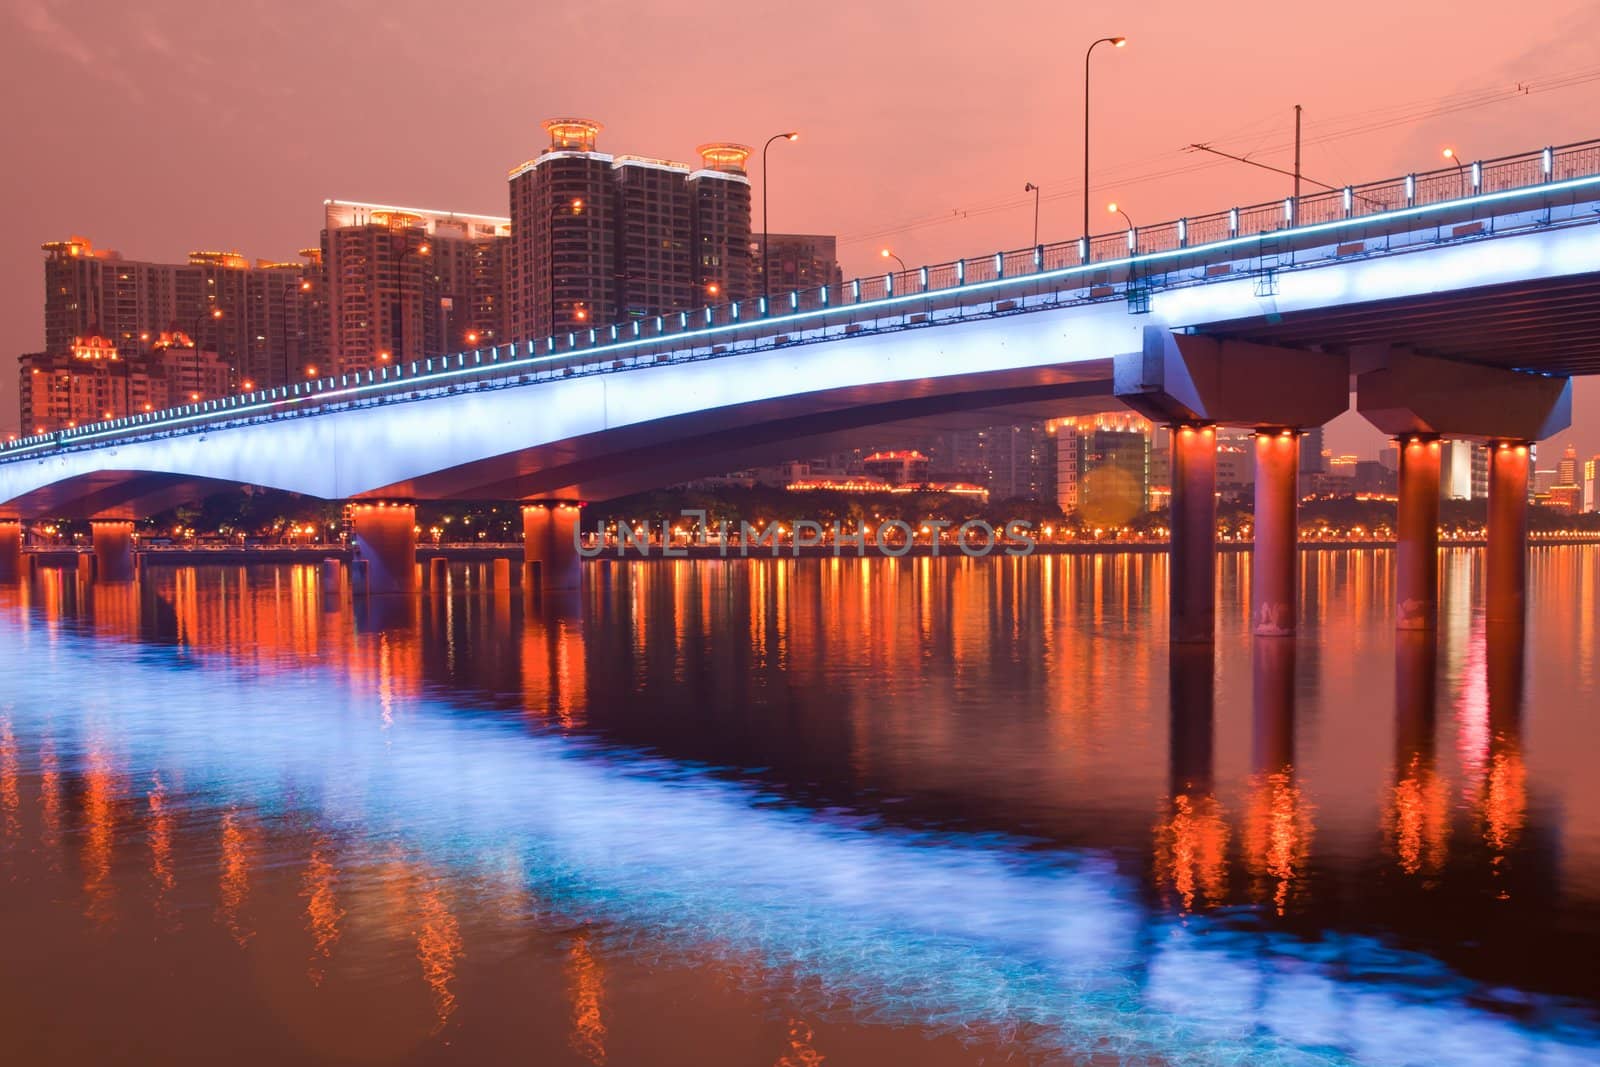 Night scene of a modern bridge,photo taken in Guangzhou city, Guangdong province, China